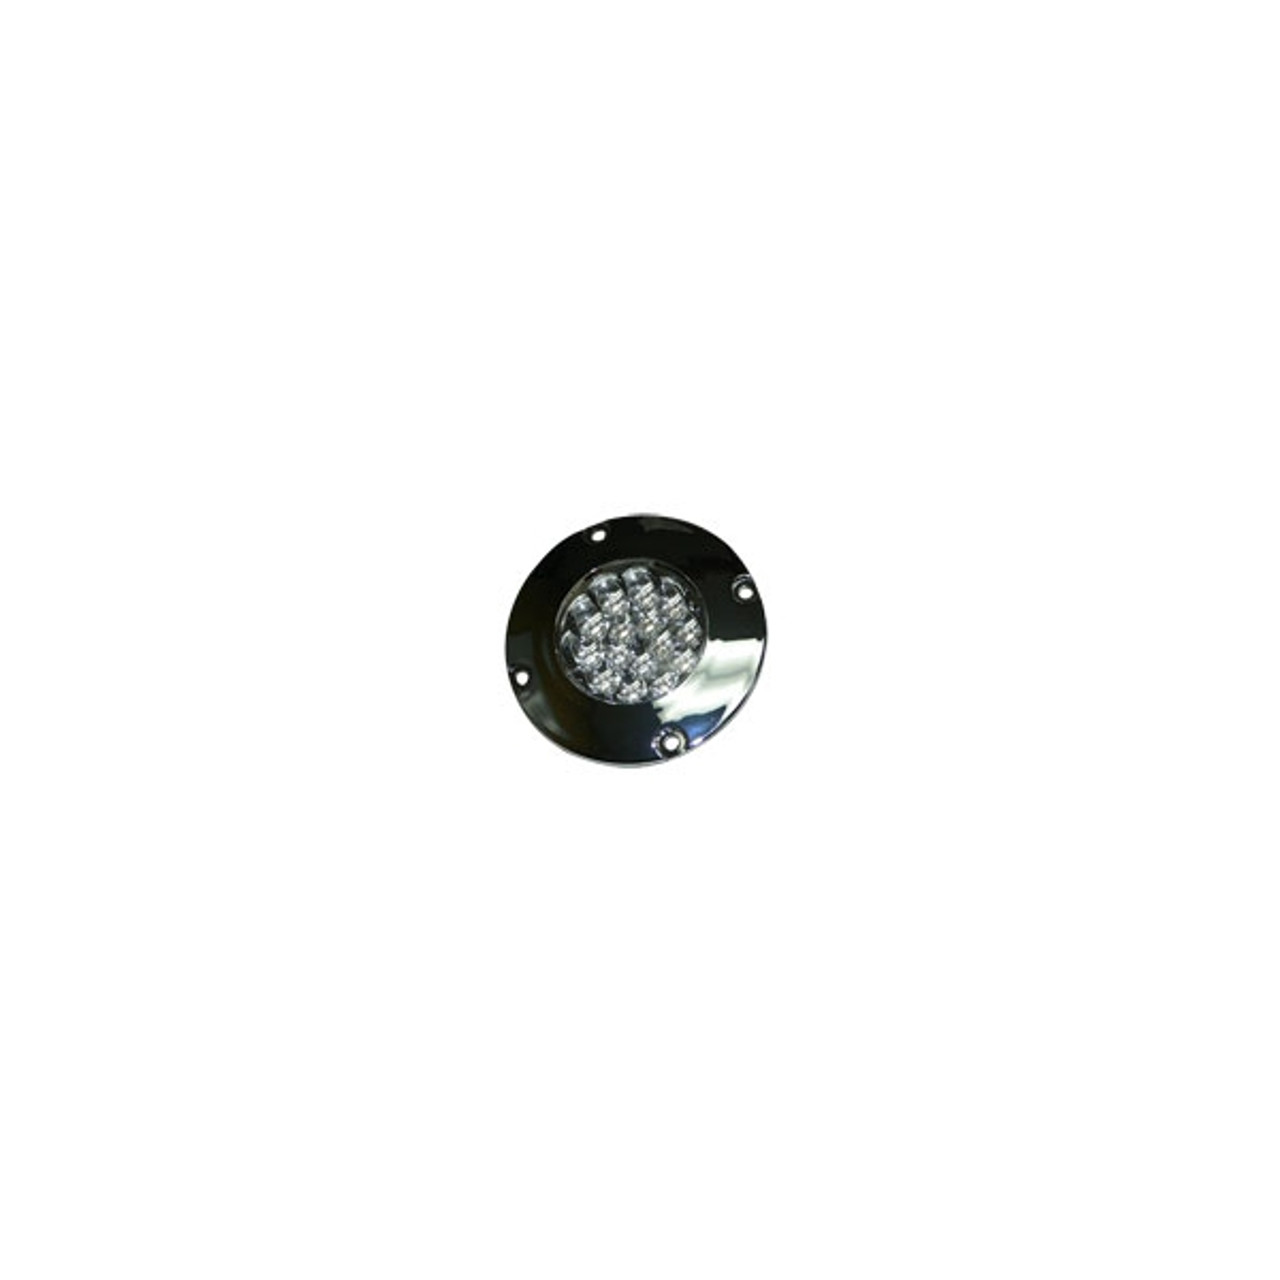 Barnegat - Baitwell Light - 12V, White LED, Chrome Housing (QL-CL-CH-LED-W) - Apollo Lighting